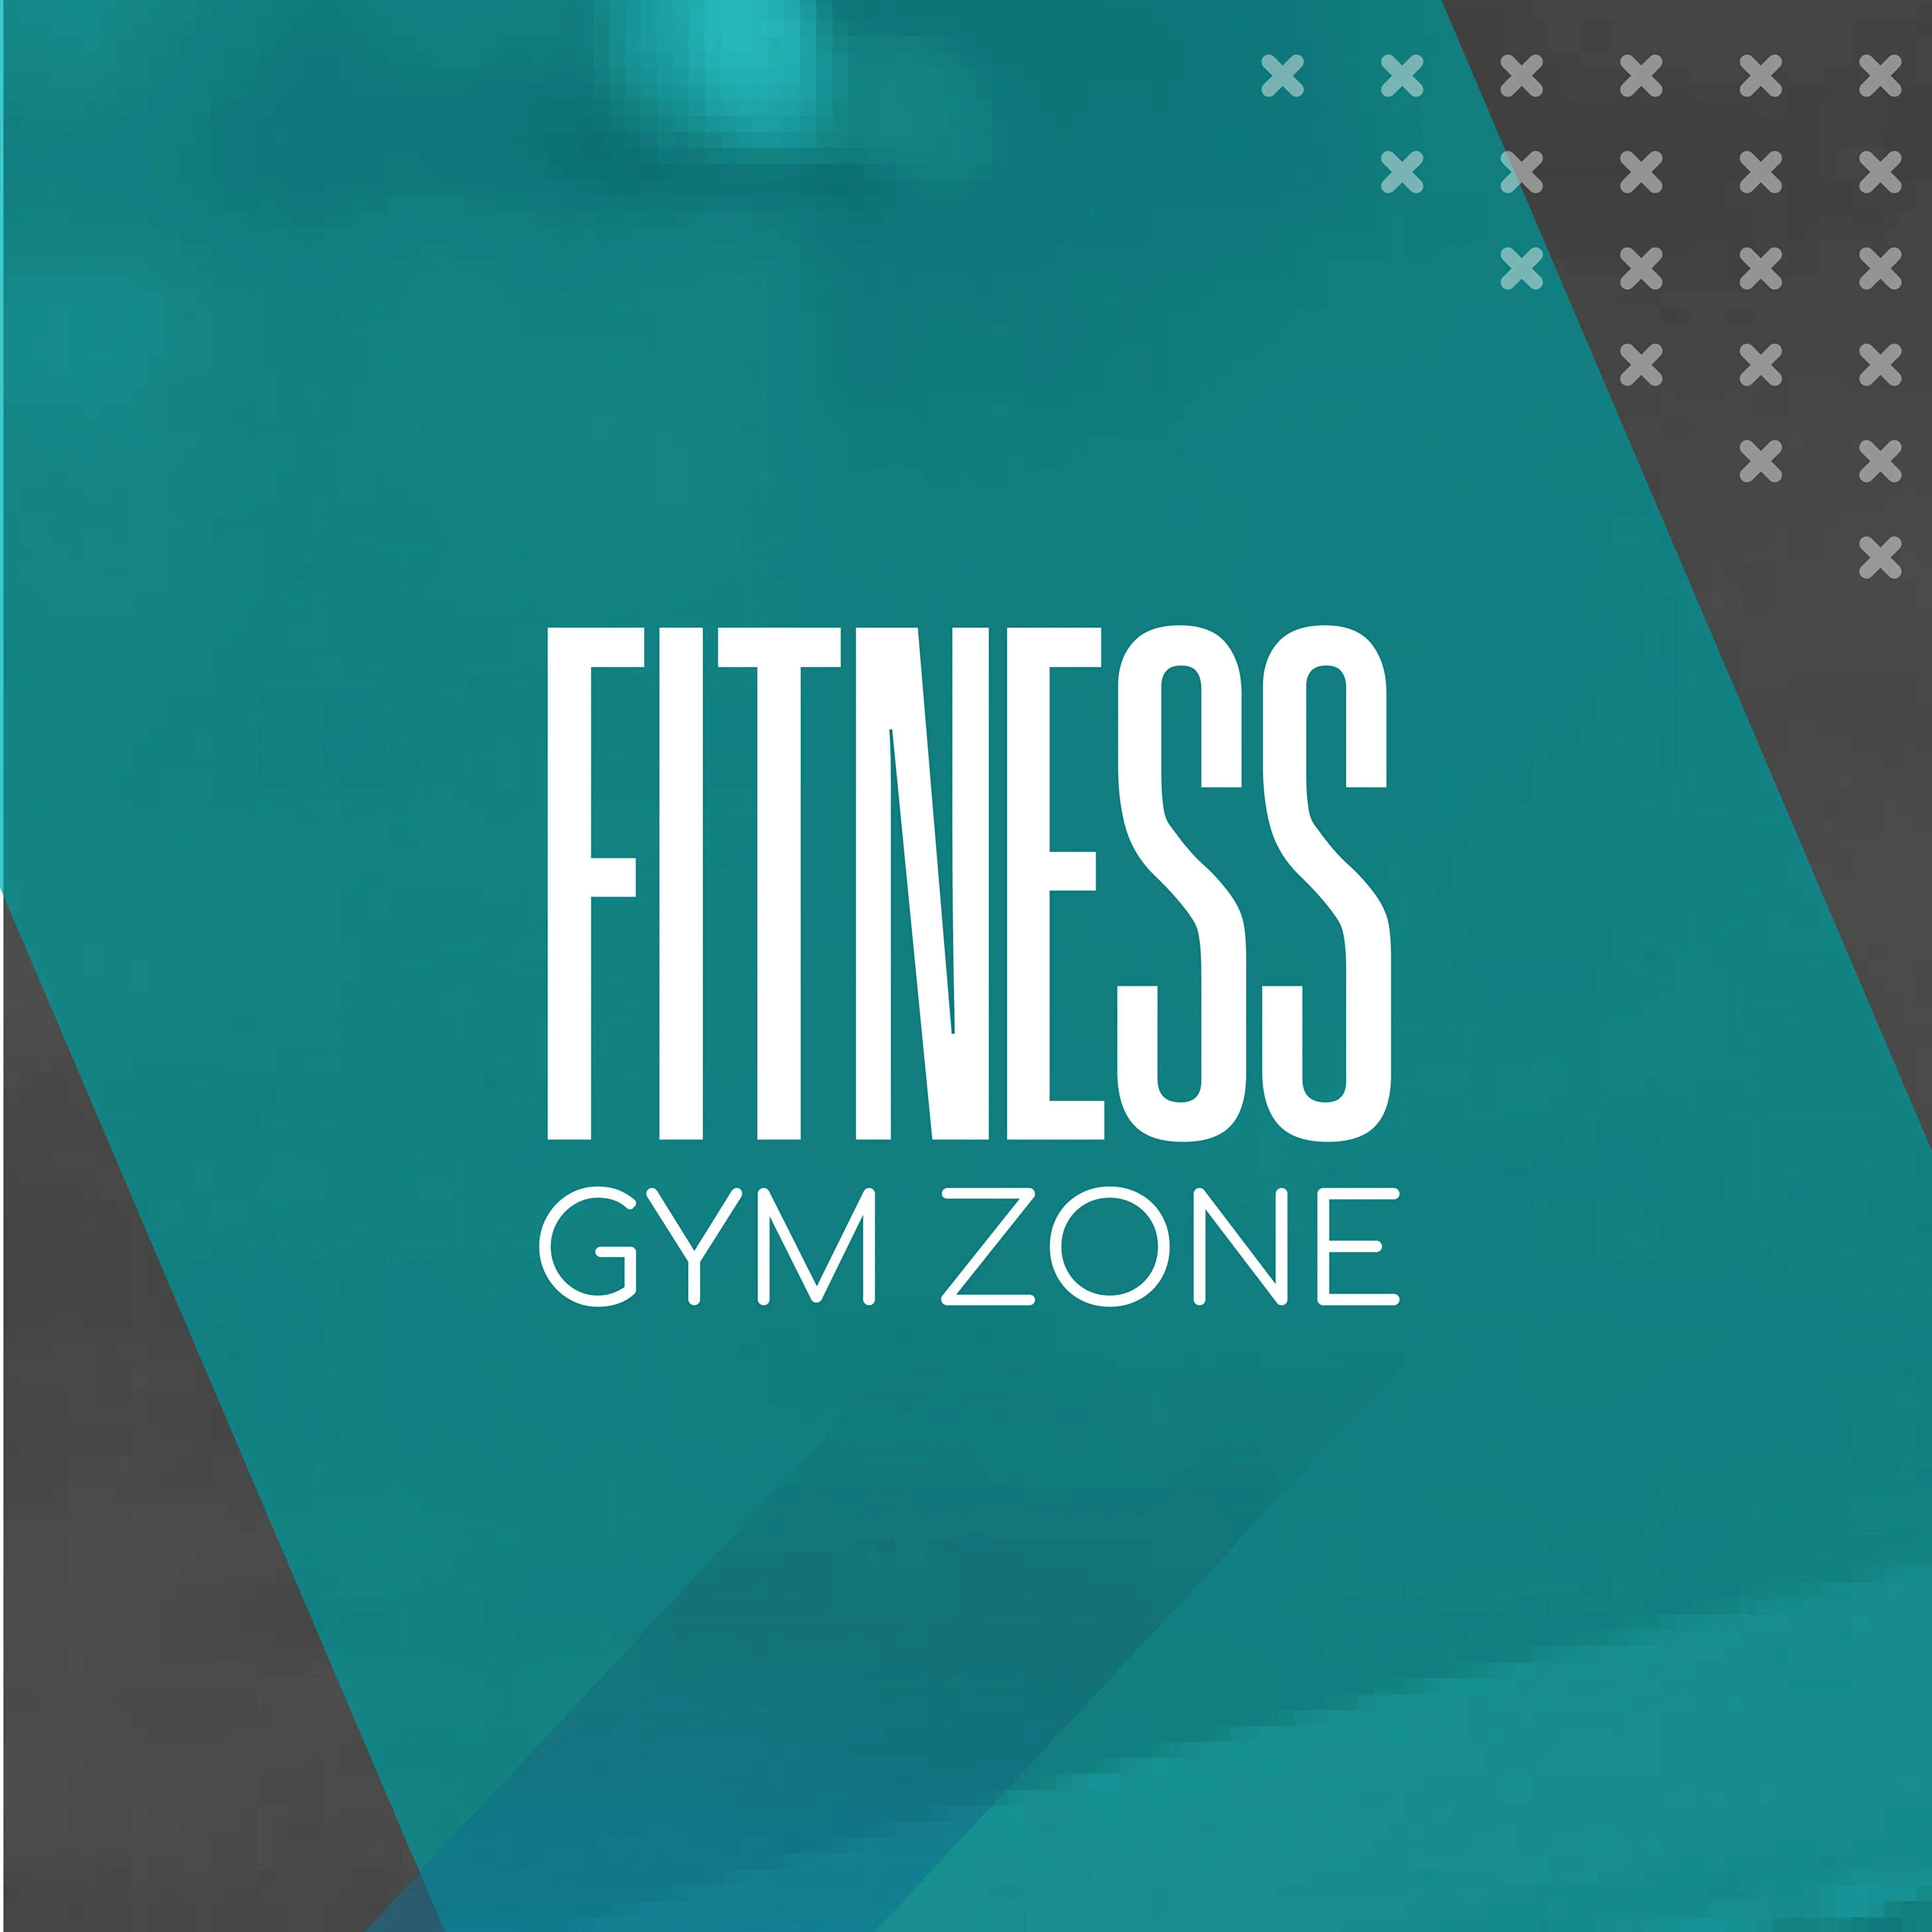 Gimnasio-fitness-gym-zone-8363